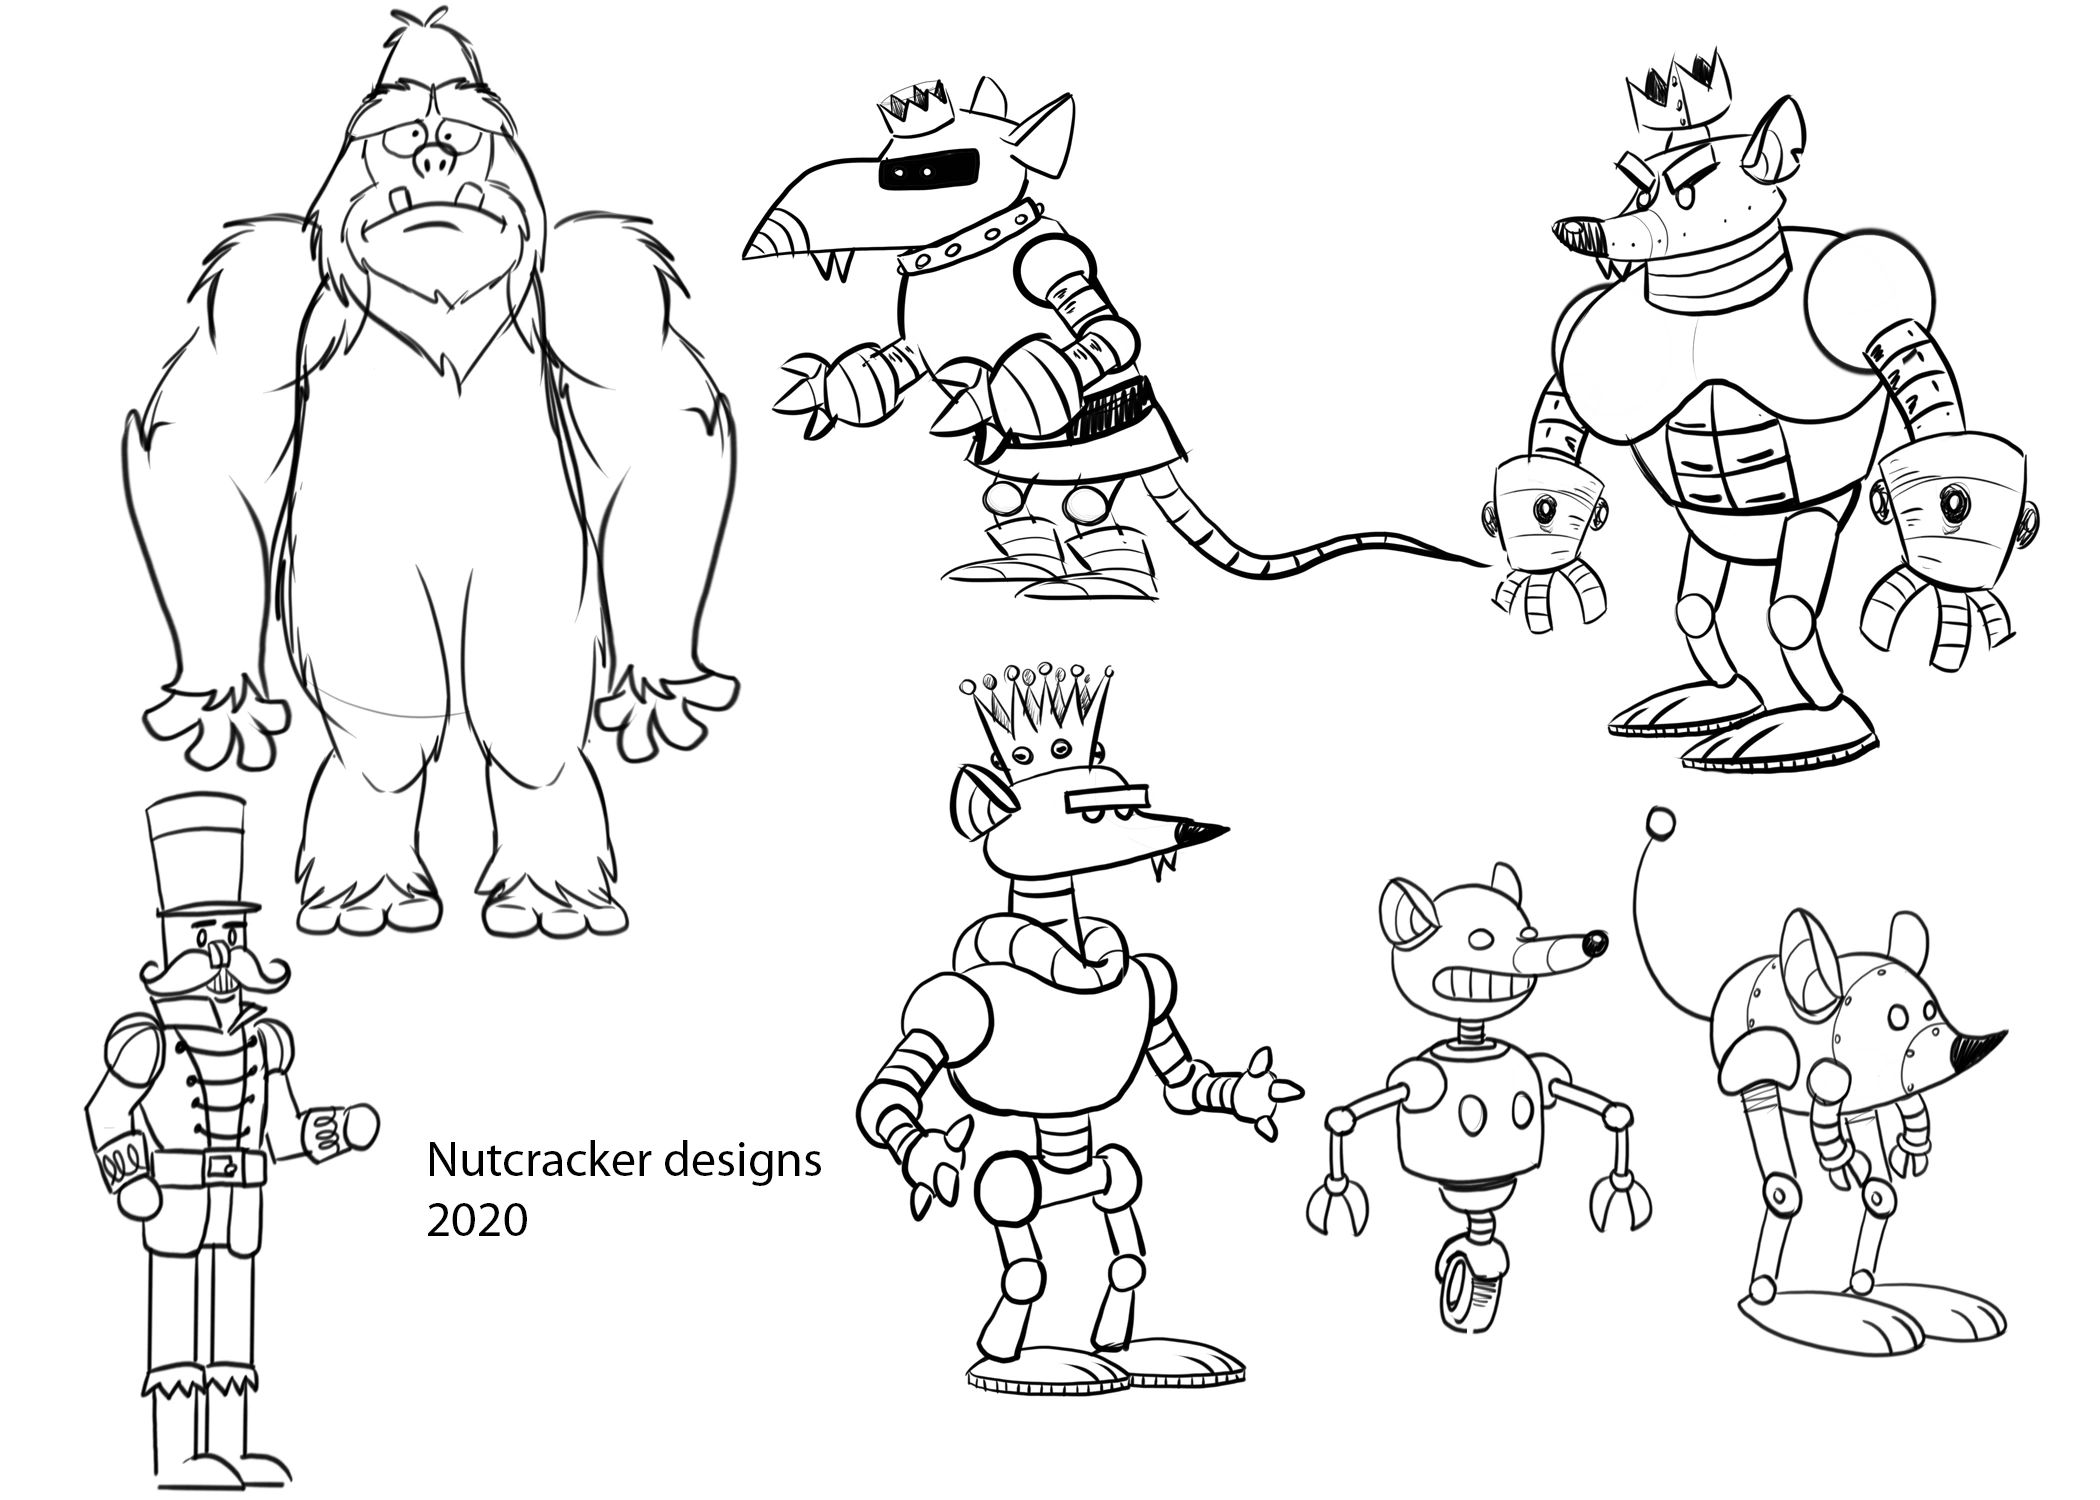 character design breakdown